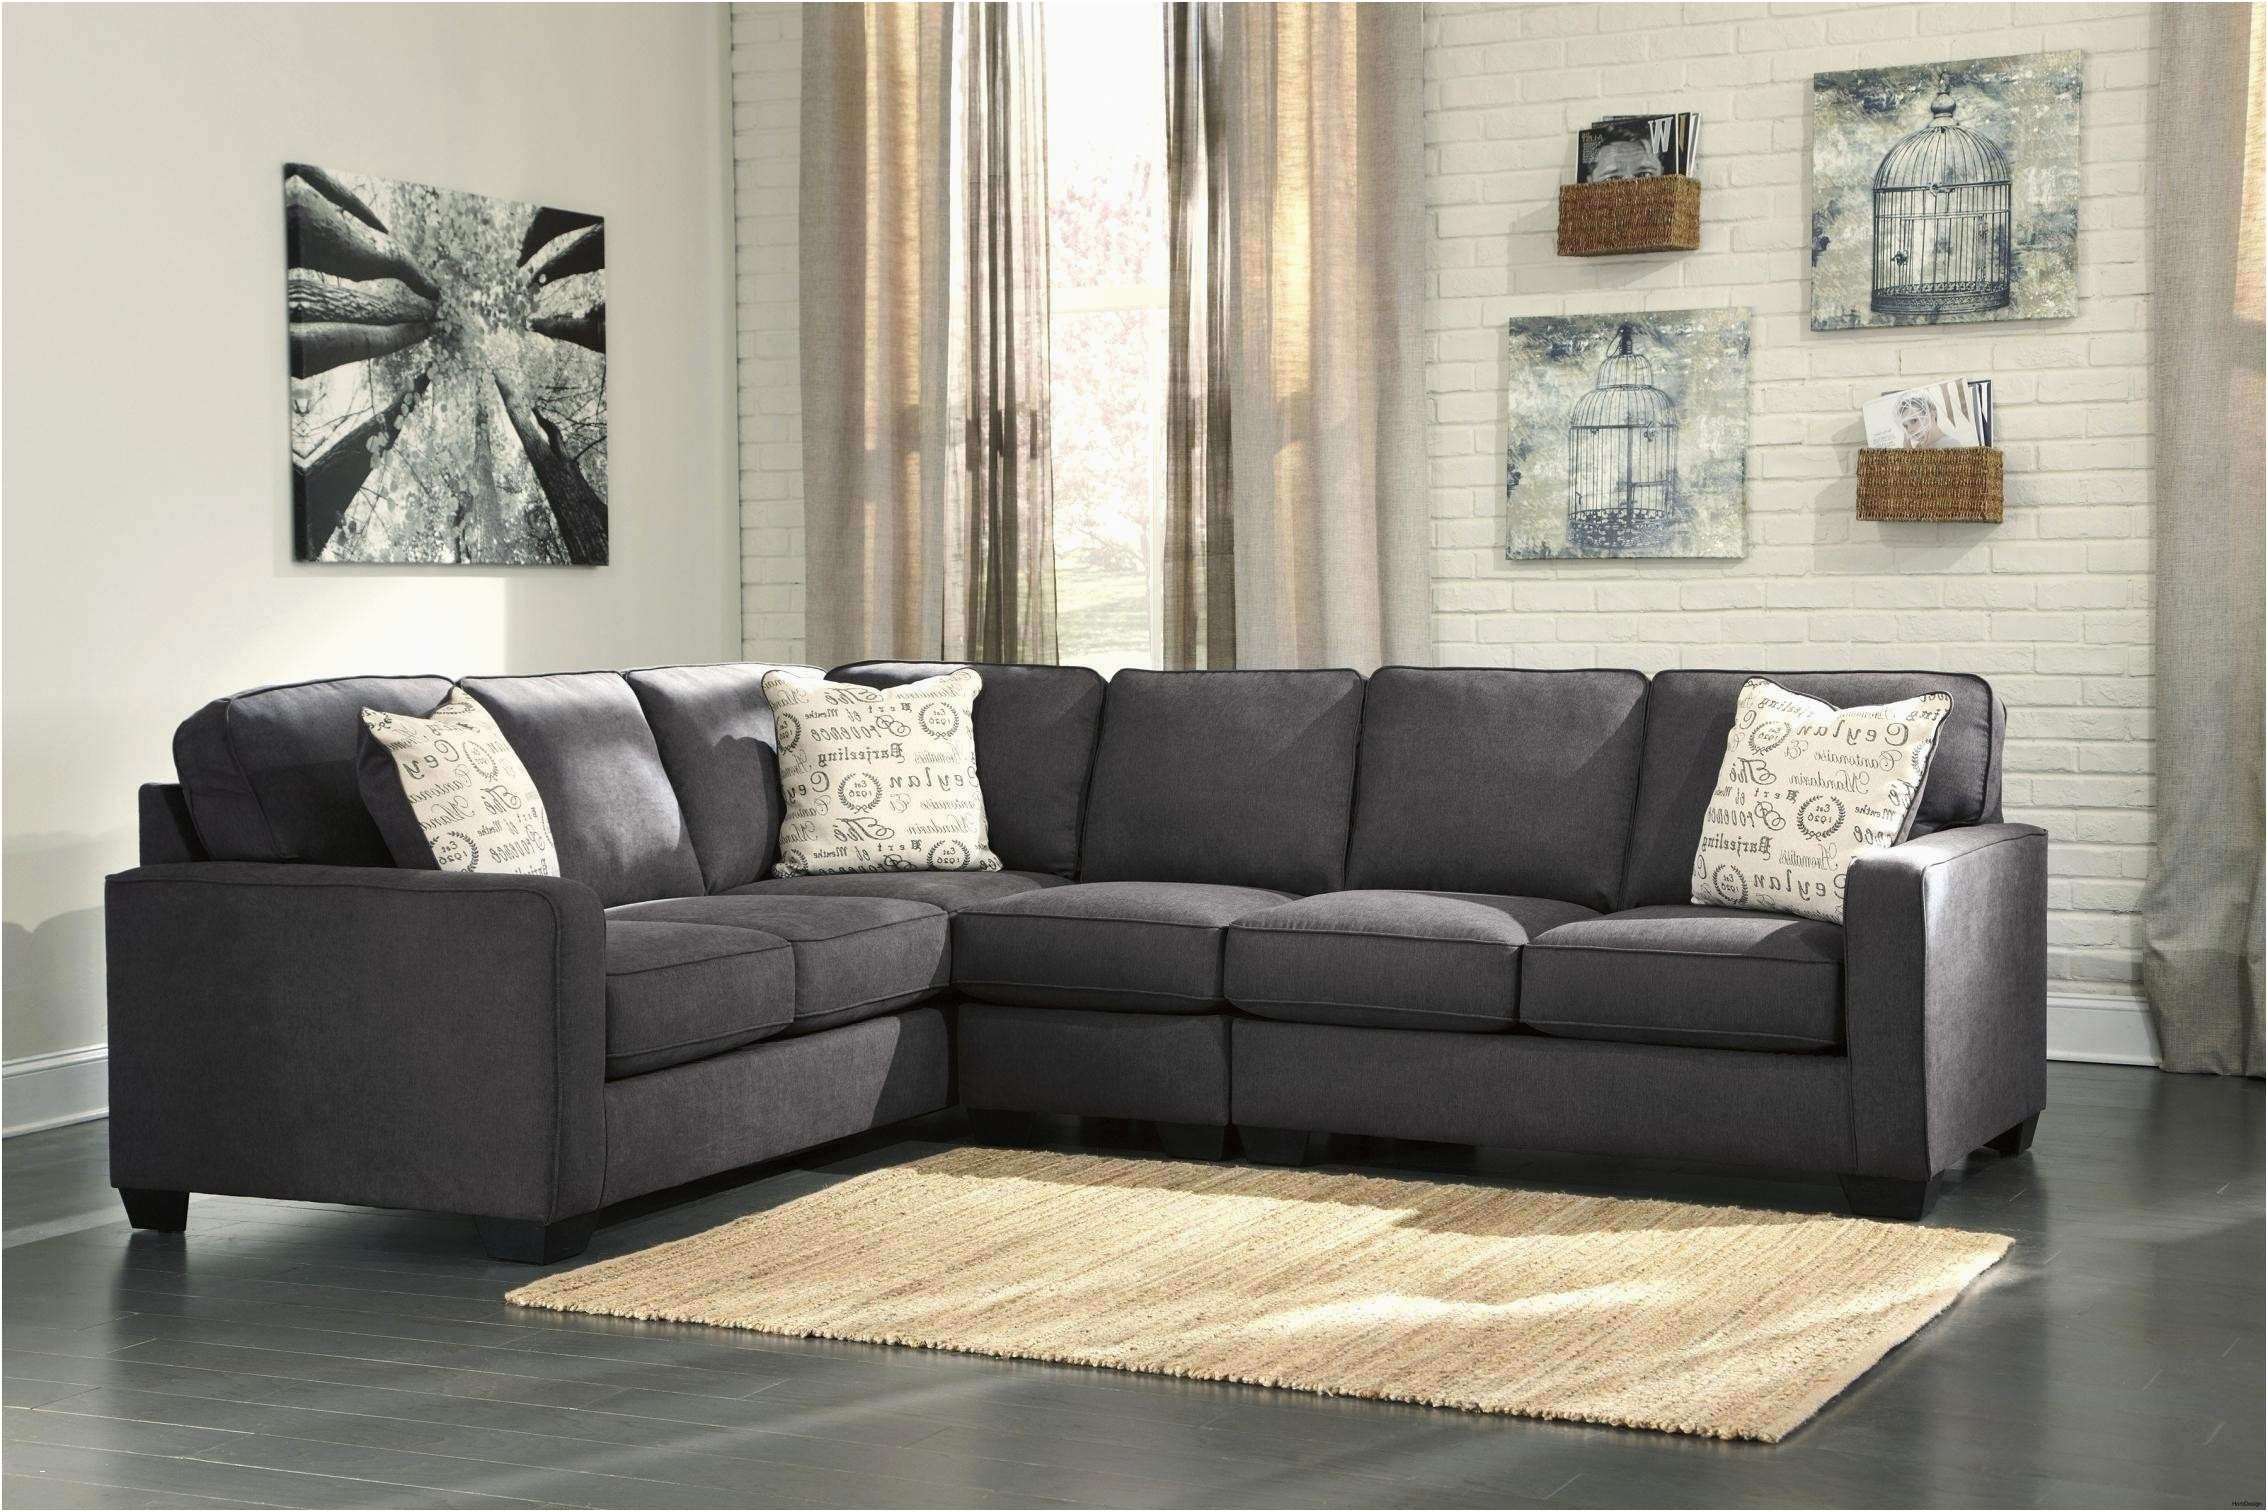 schlafsofa leder braun luxus sofa l form braun awesome l sofa awesome hay couch 0d of schlafsofa leder braun